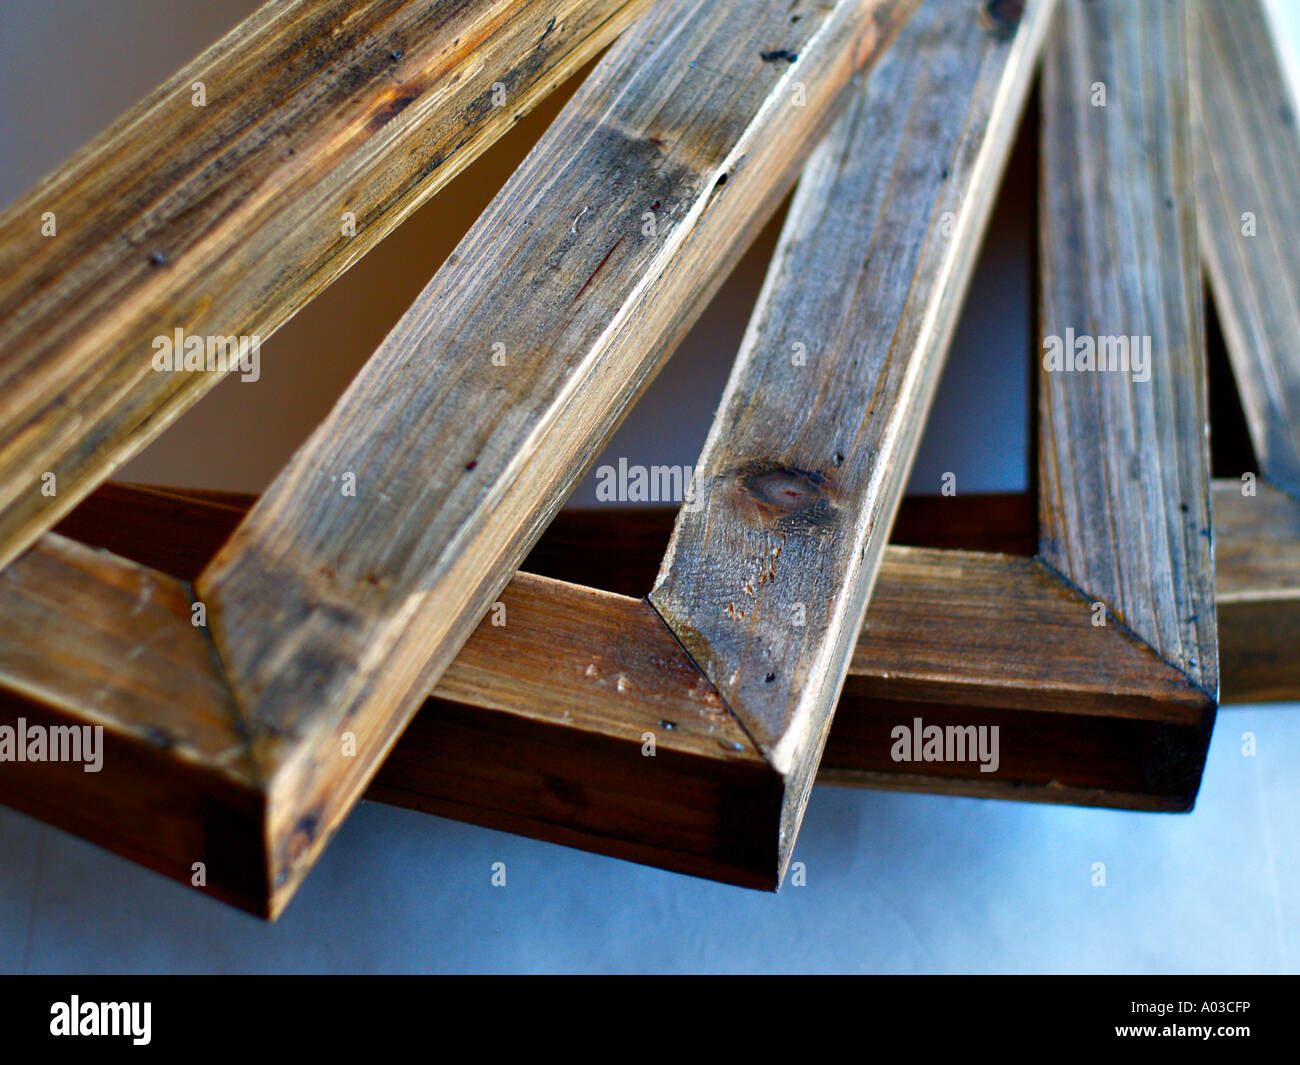 Finitura rustico in legno massiccio fotogrammi in subì, illuminazione fredda. Foto Stock